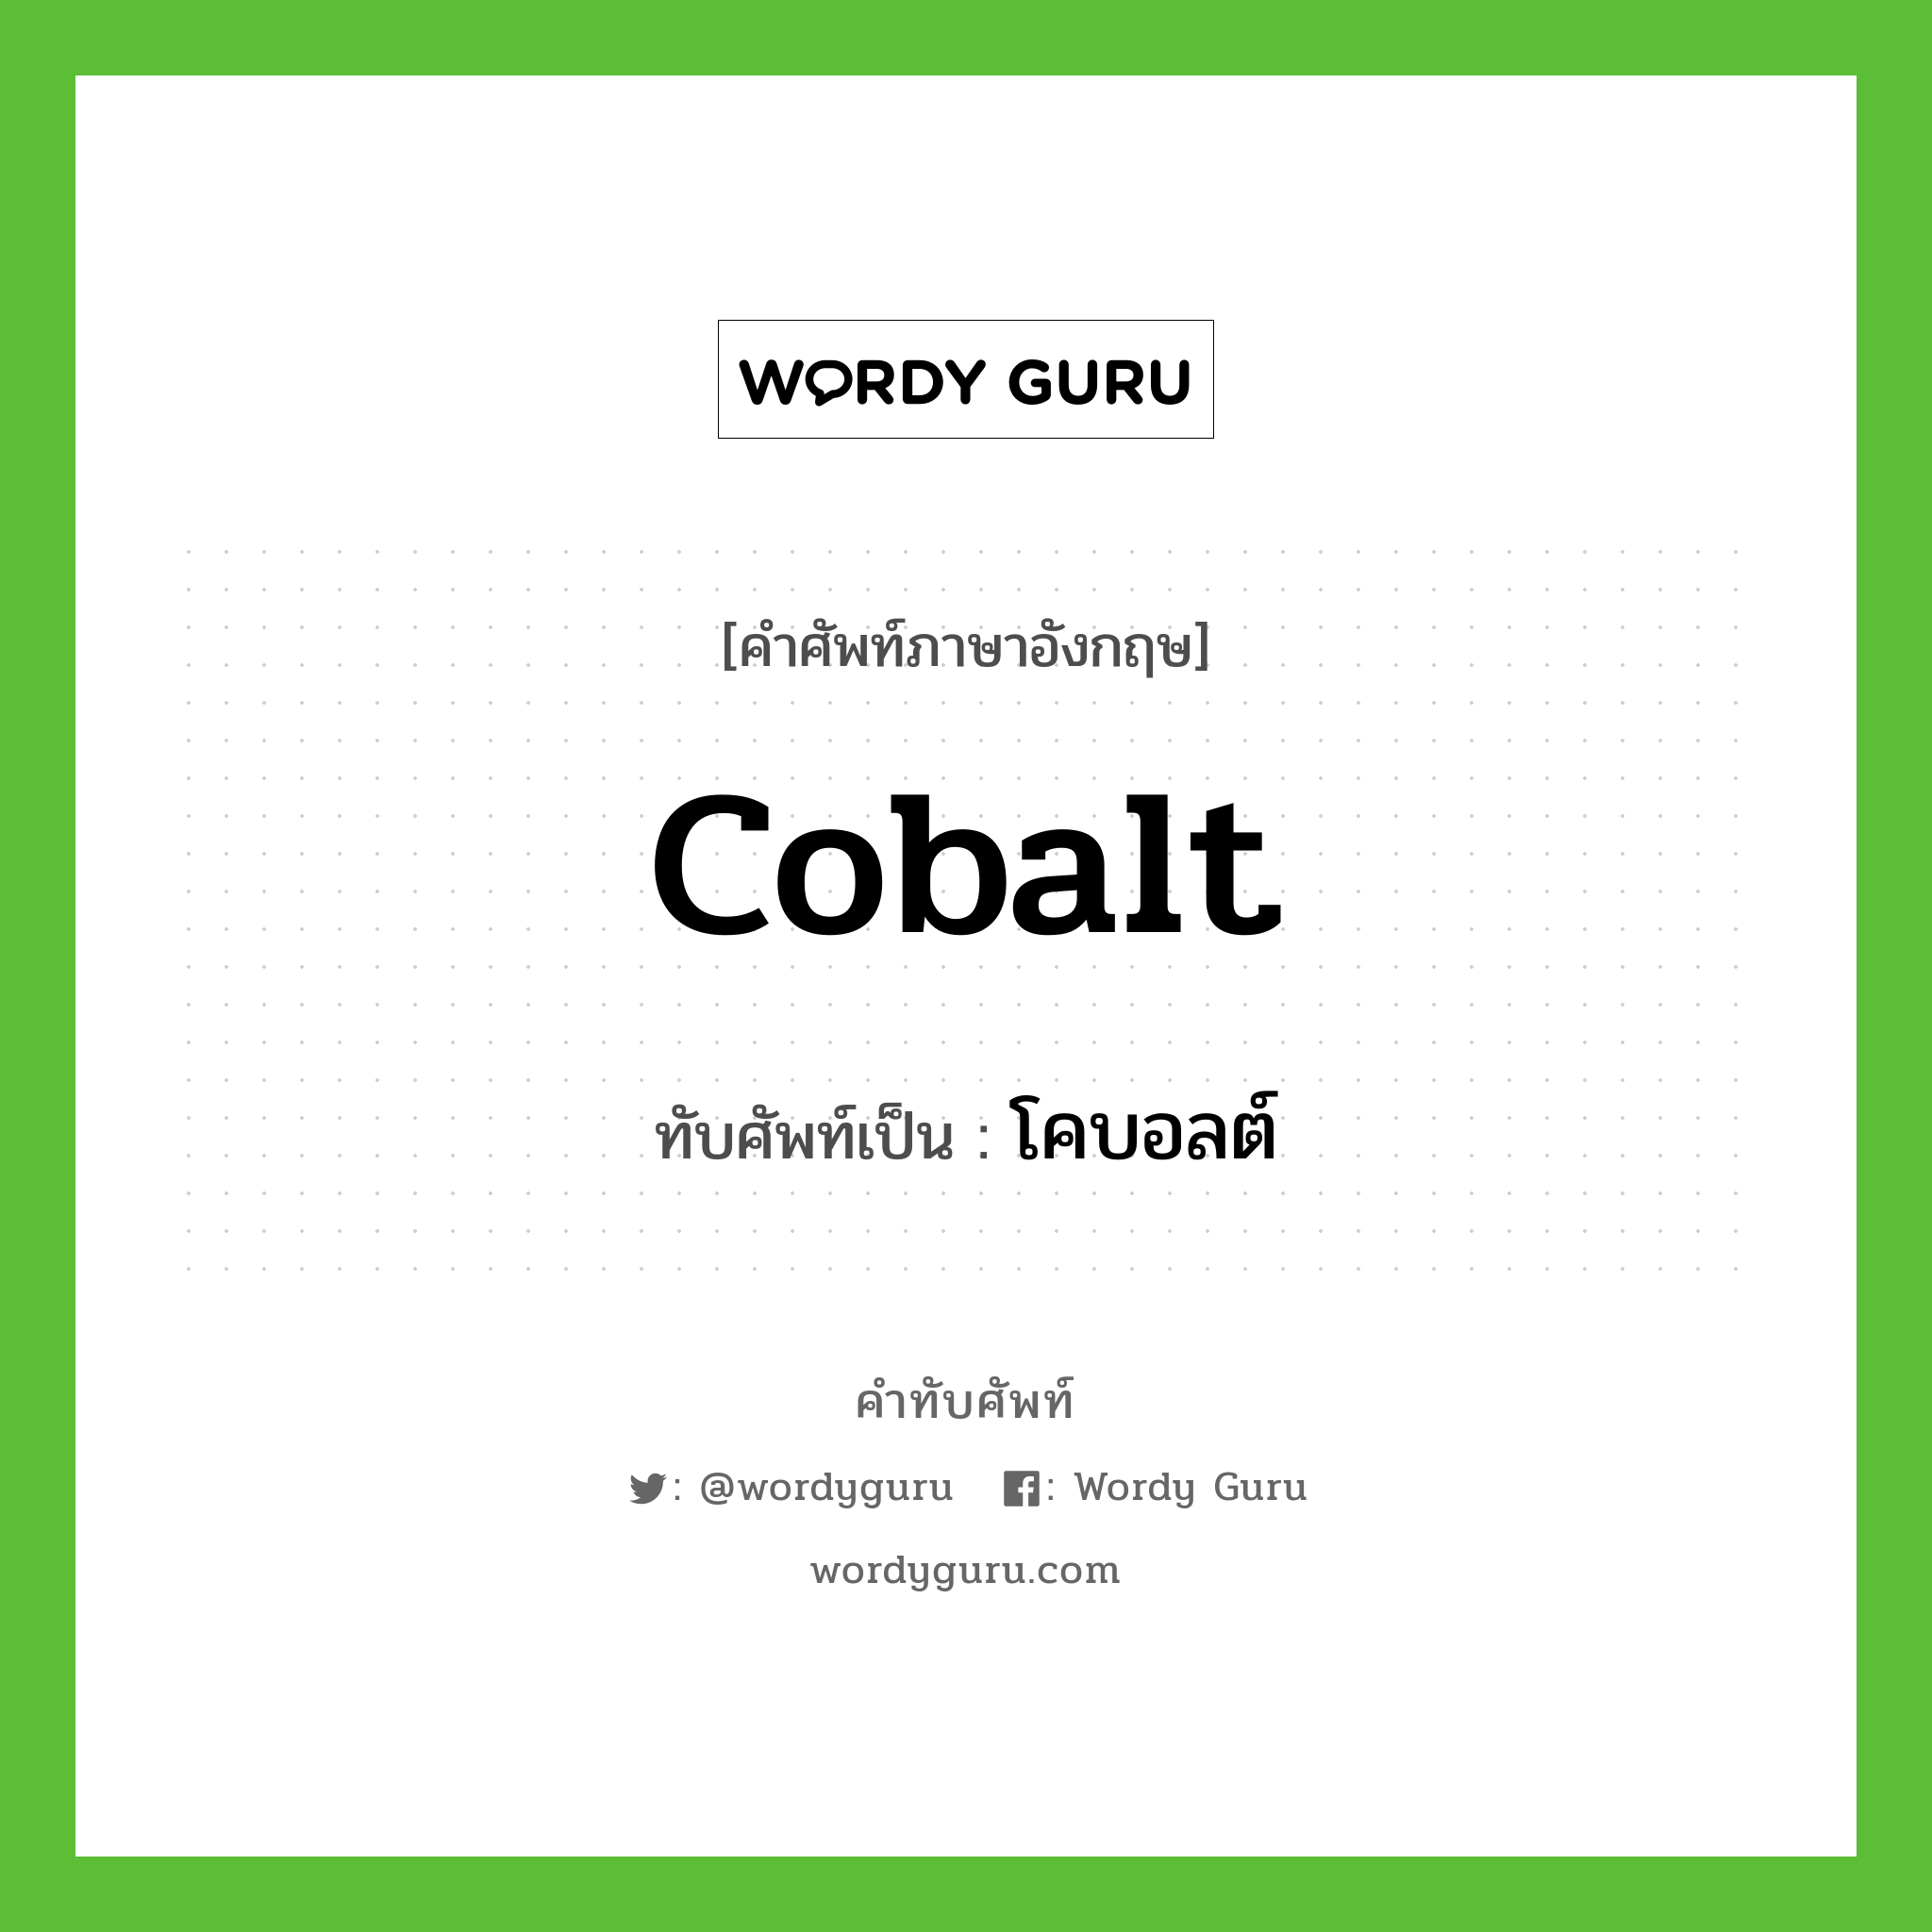 โคบอลต์ เขียนอย่างไร?, คำศัพท์ภาษาอังกฤษ โคบอลต์ ทับศัพท์เป็น cobalt